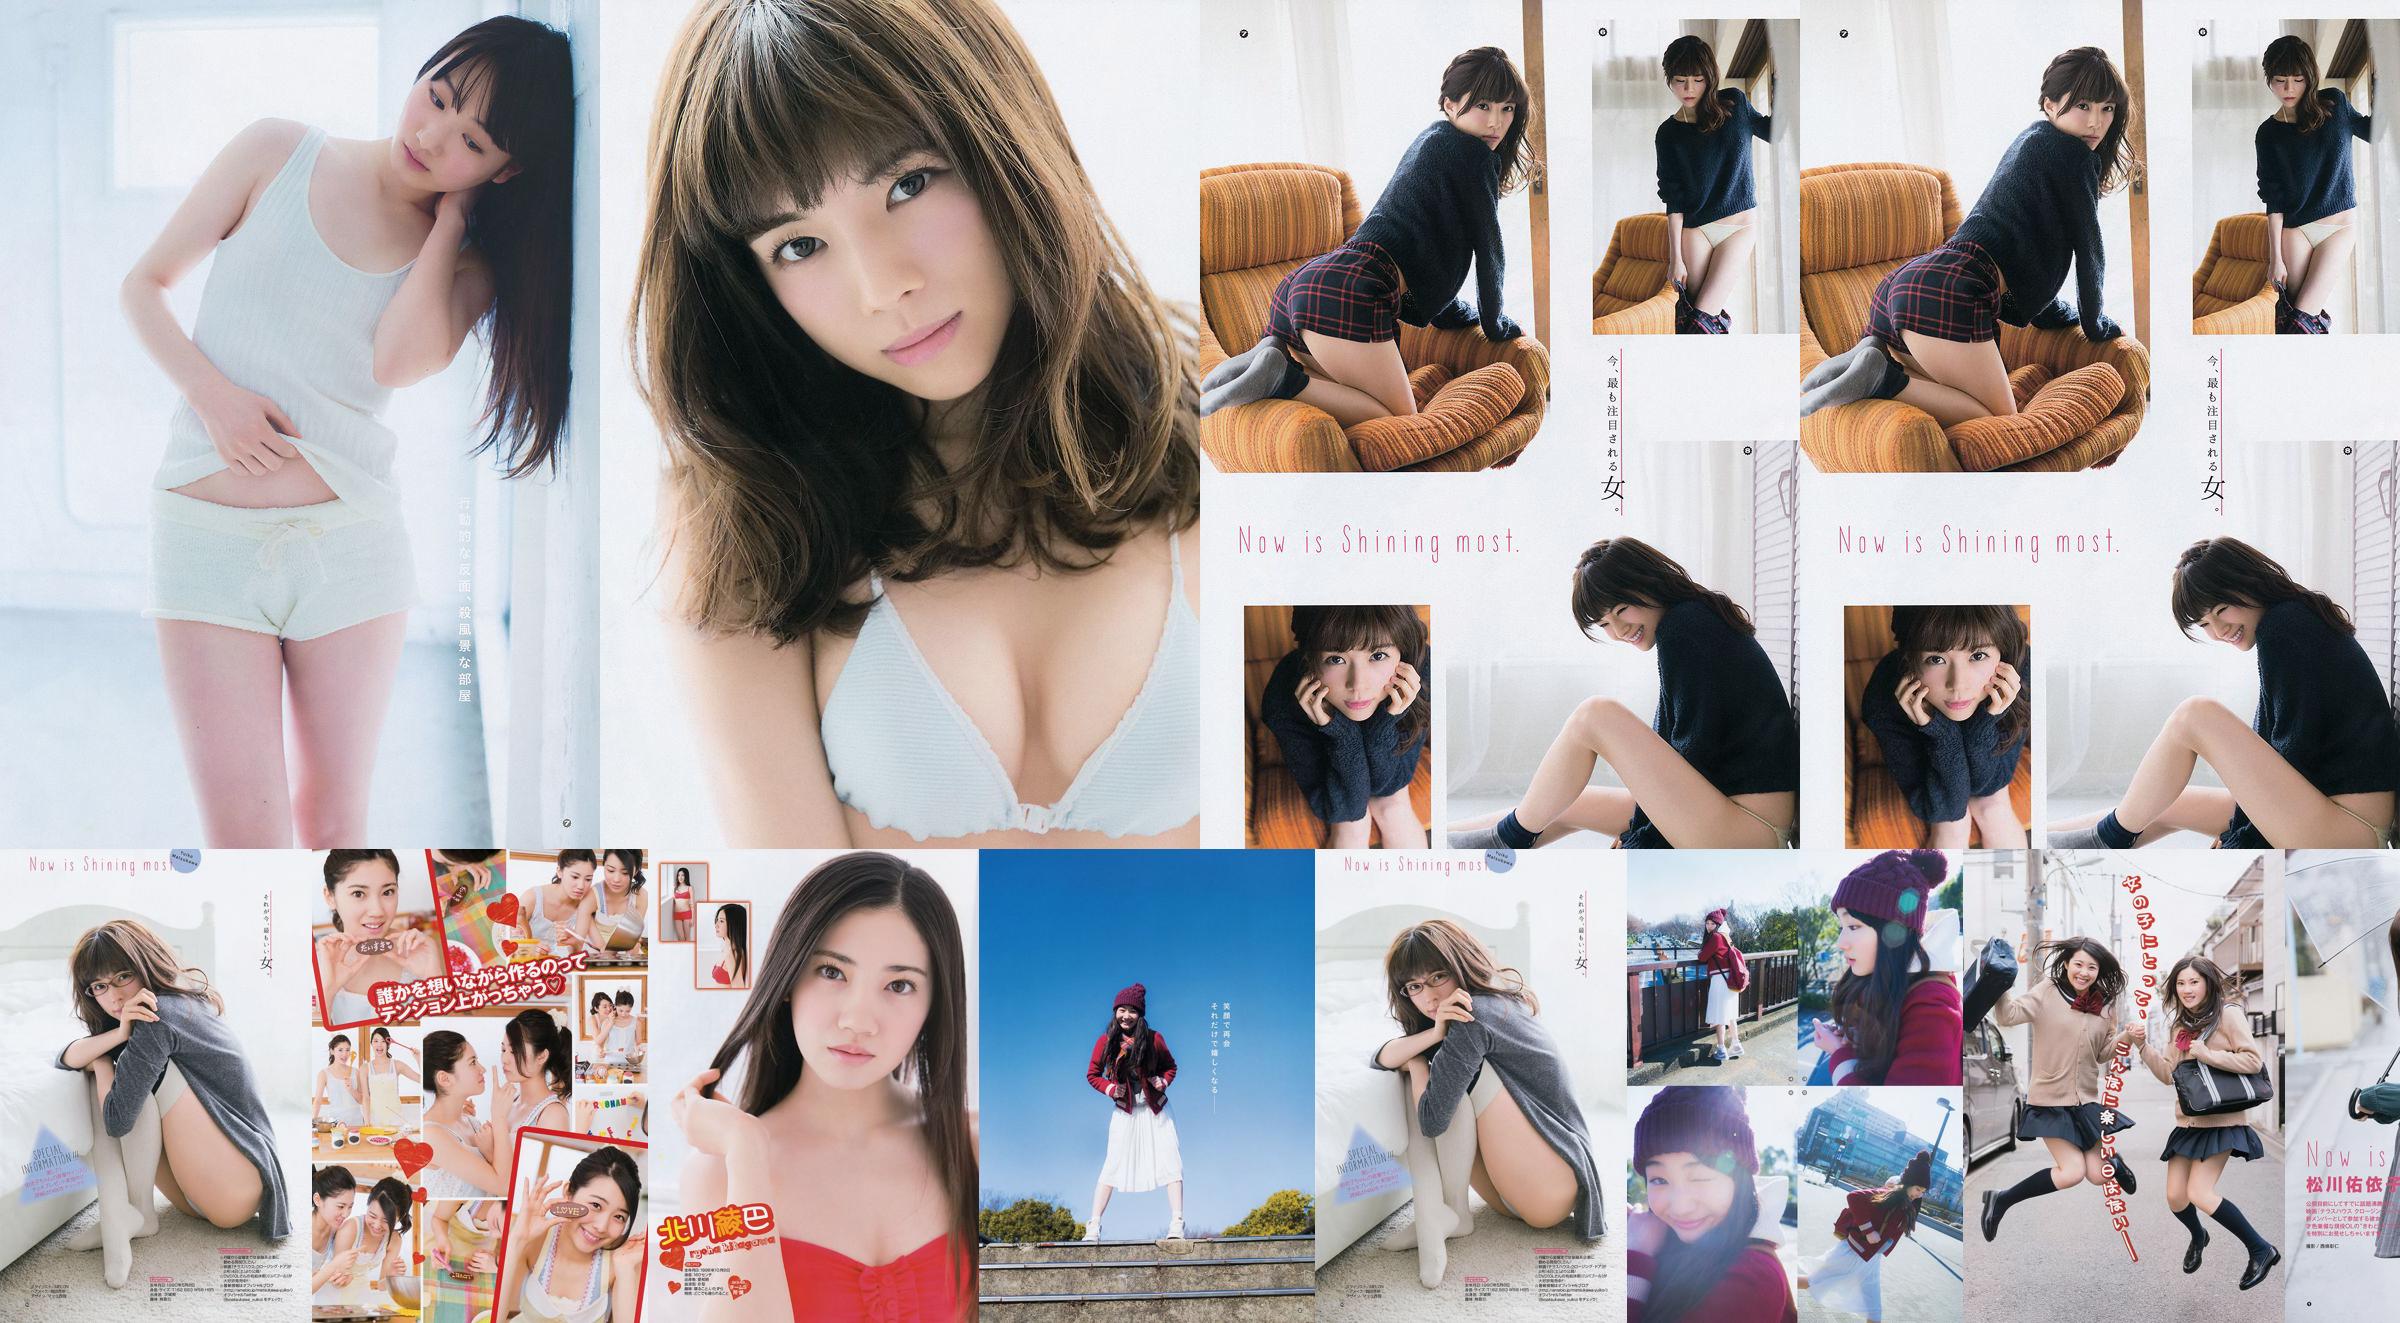 [Young Gangan] Ryoha Kitagawa Ami Miyamae Yuiko Matsukawa Narumi Akizuki 2015 No.04 ภาพถ่าย No.f620e6 หน้า 4